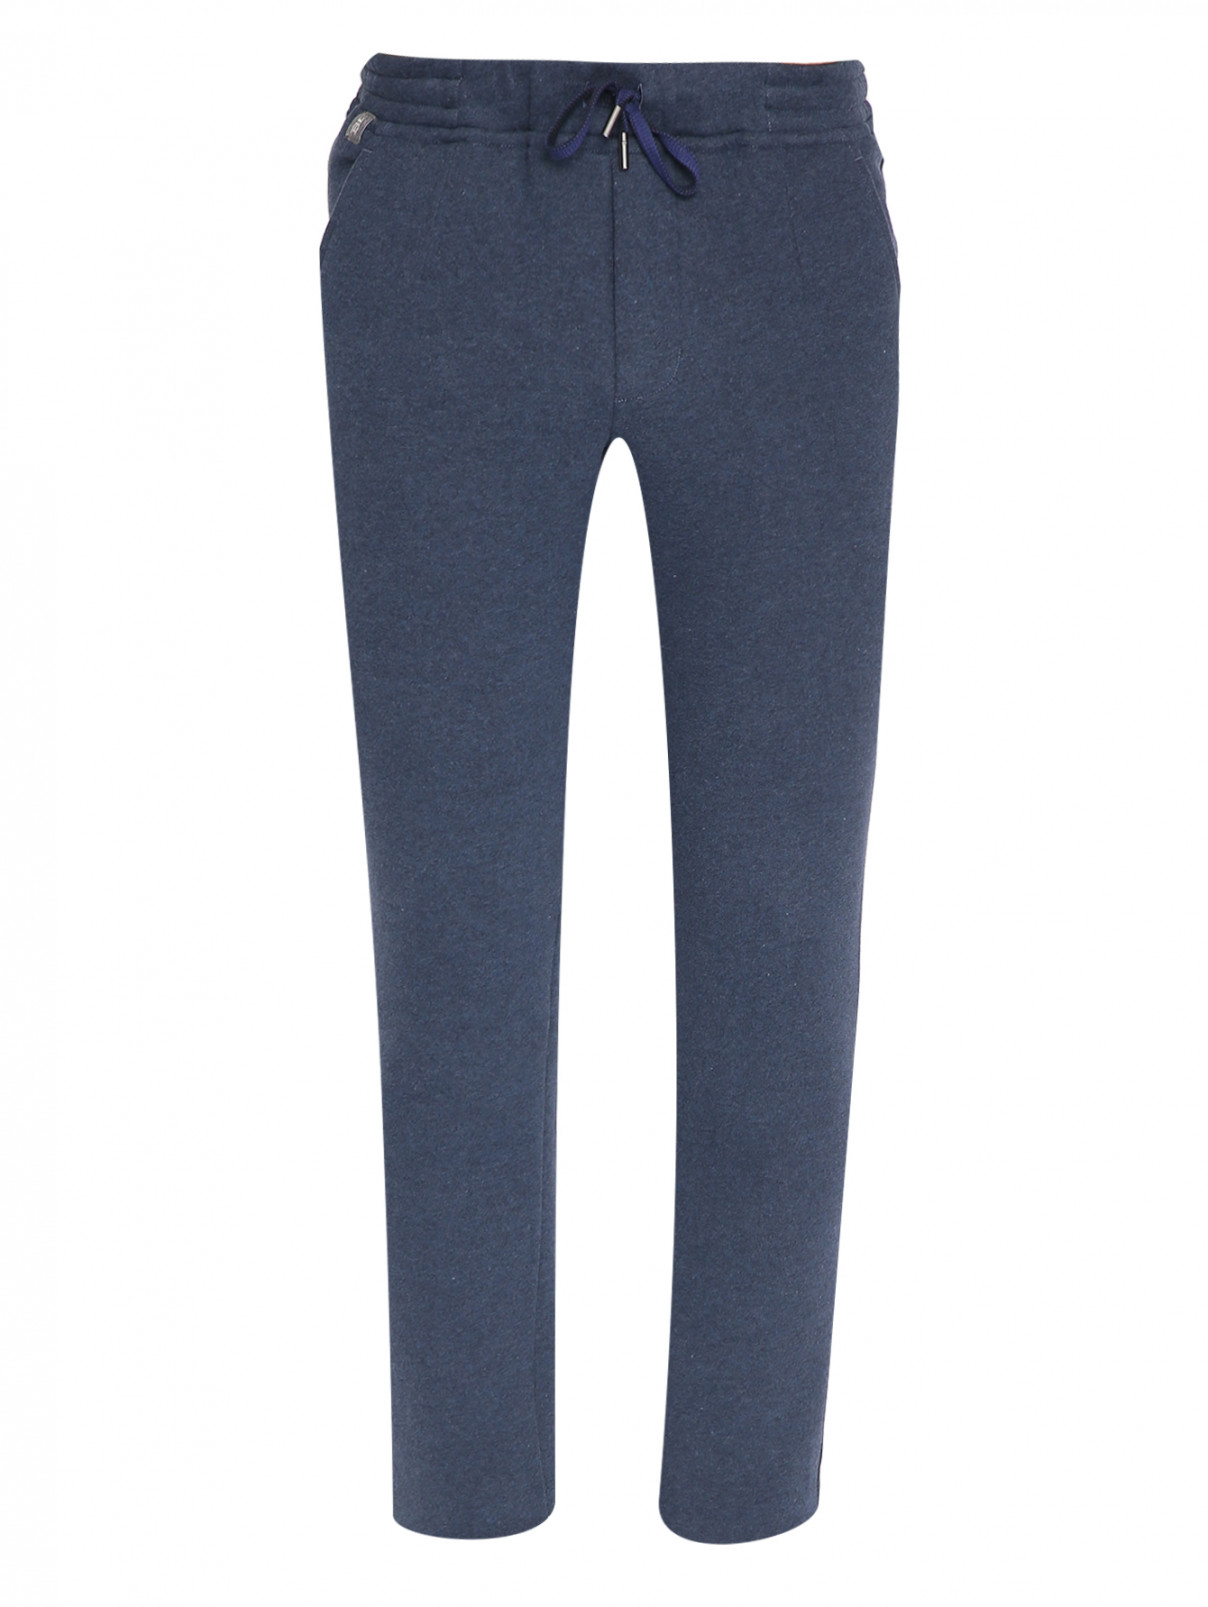 Трикотажные брюки на резинке с карманами Capobianco  –  Общий вид  – Цвет:  Синий